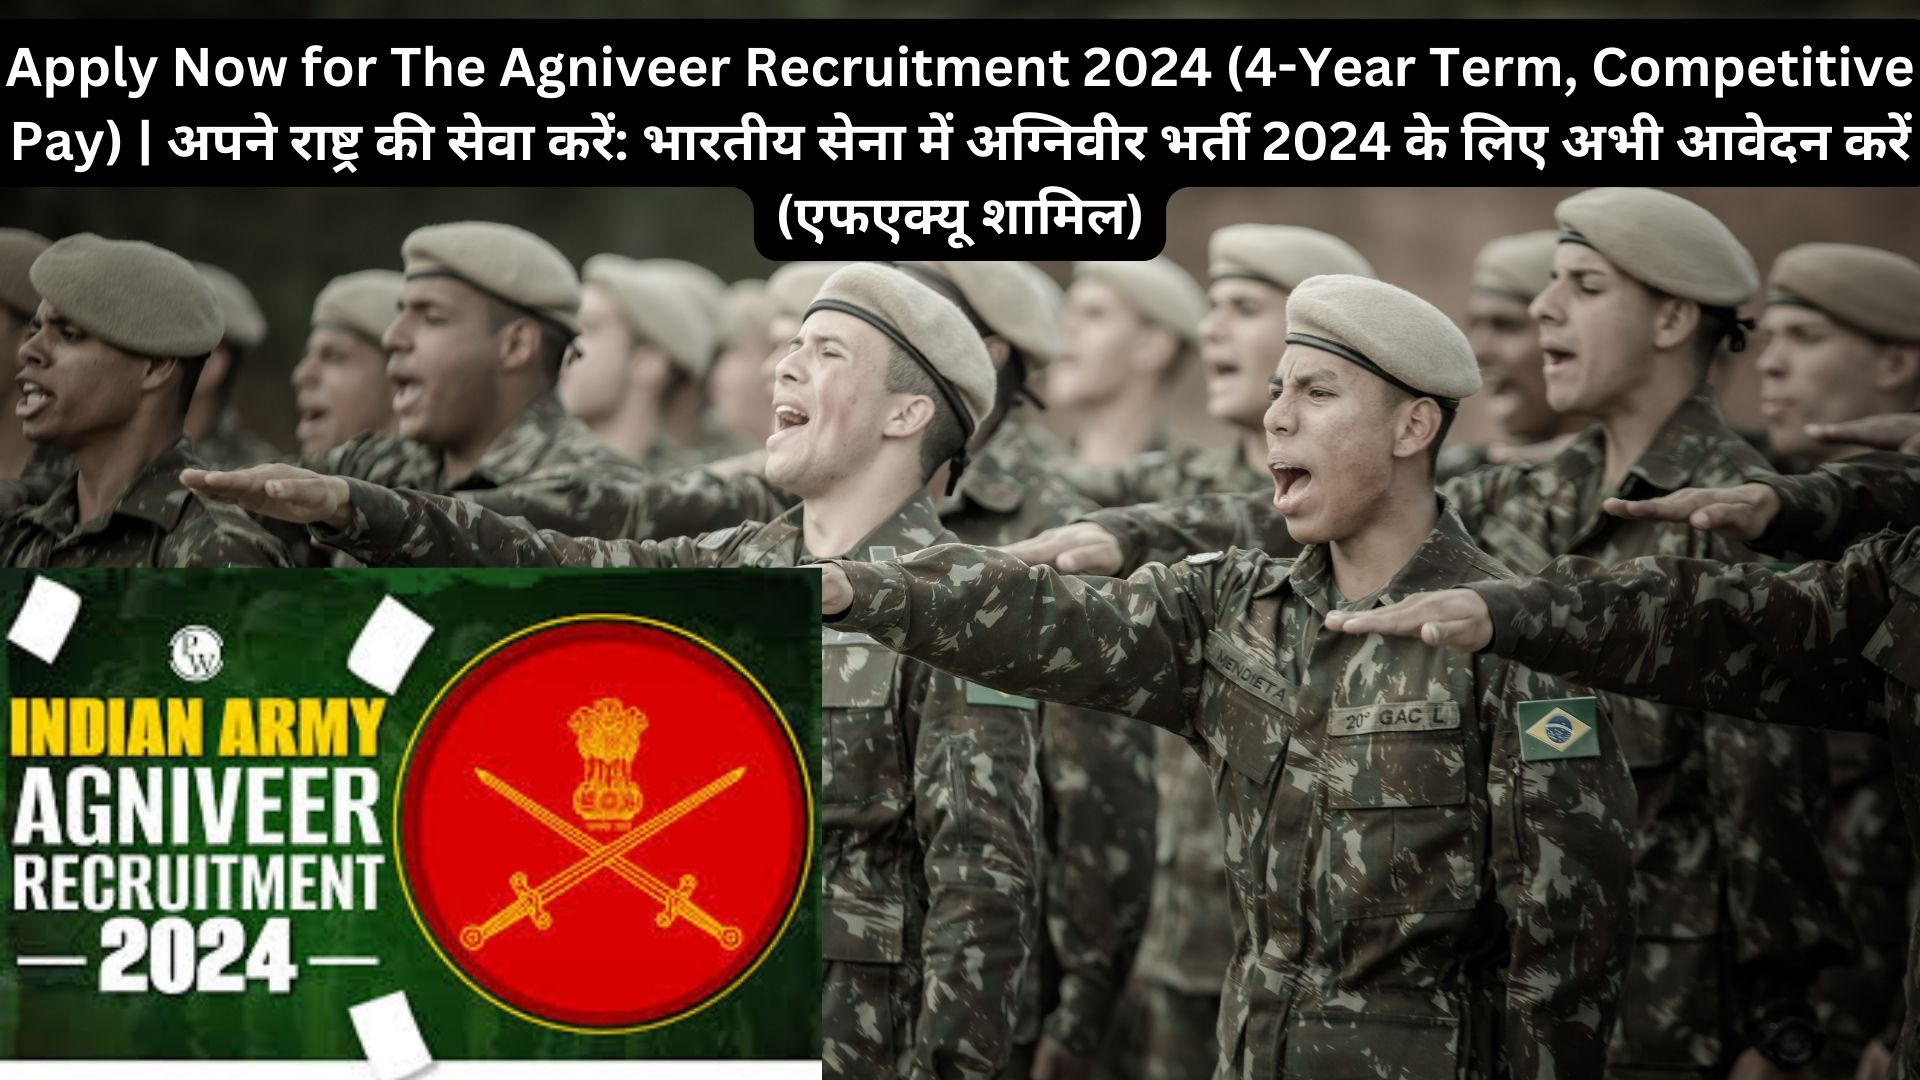 Apply Now for The Agniveer Recruitment 2024 (4-Year Term, Competitive Pay) | अपने राष्ट्र की सेवा करें: भारतीय सेना में अग्निवीर भर्ती 2024 के लिए अभी आवेदन करें (एफएक्यू शामिल)